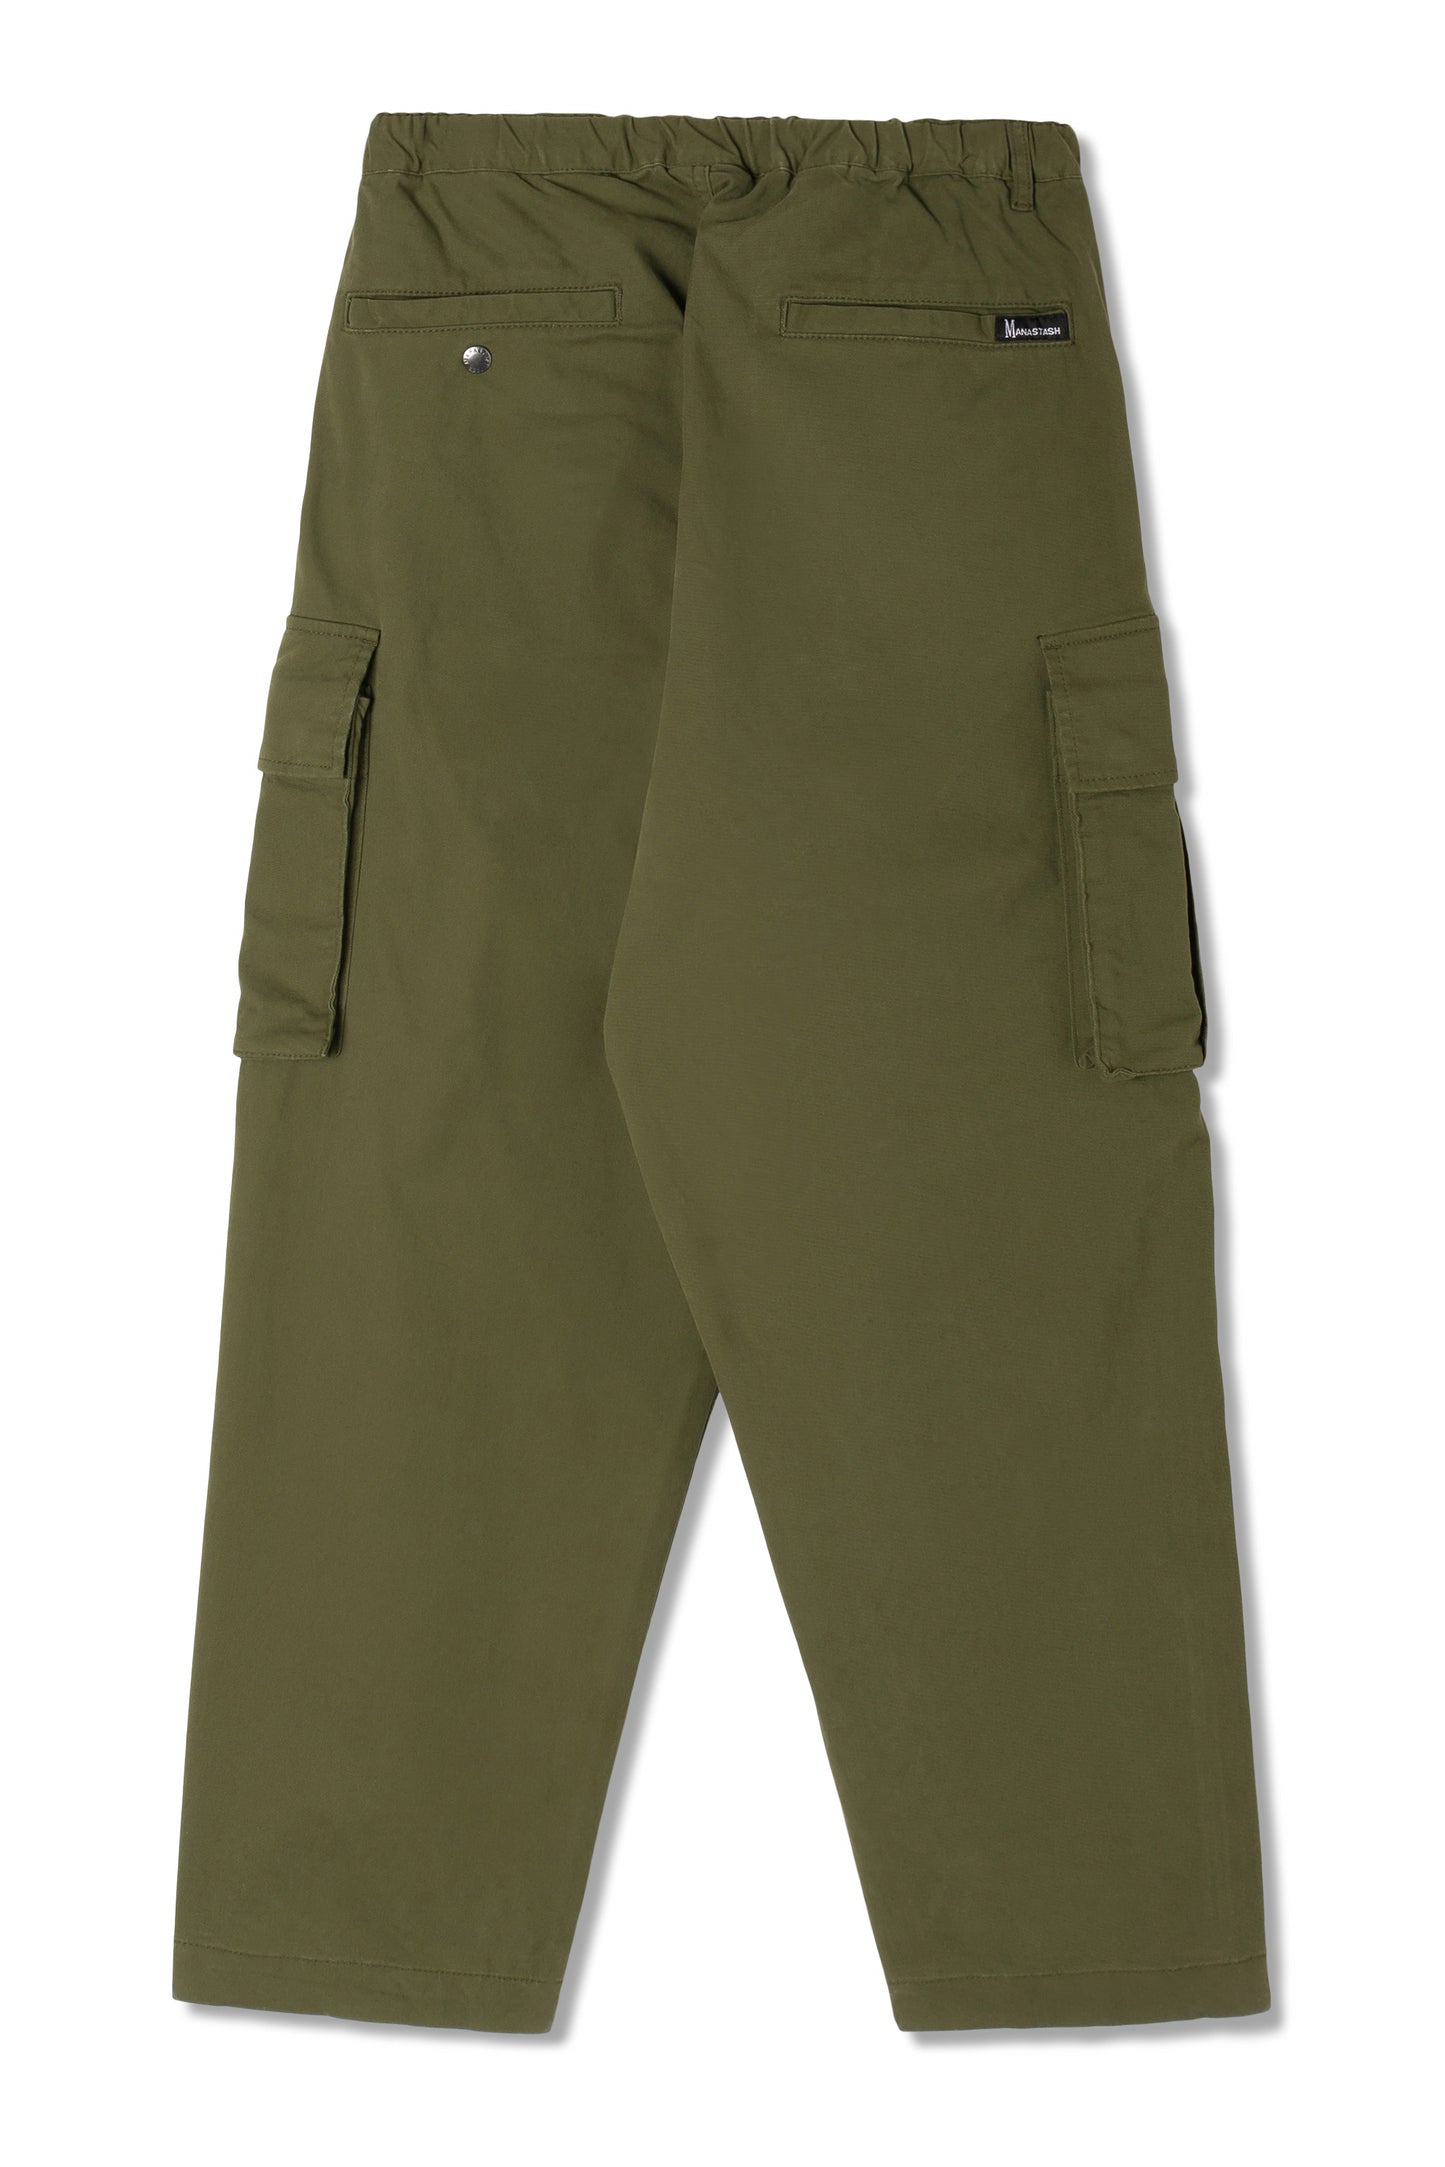 Flex Climber Cargo Pant (Olive)